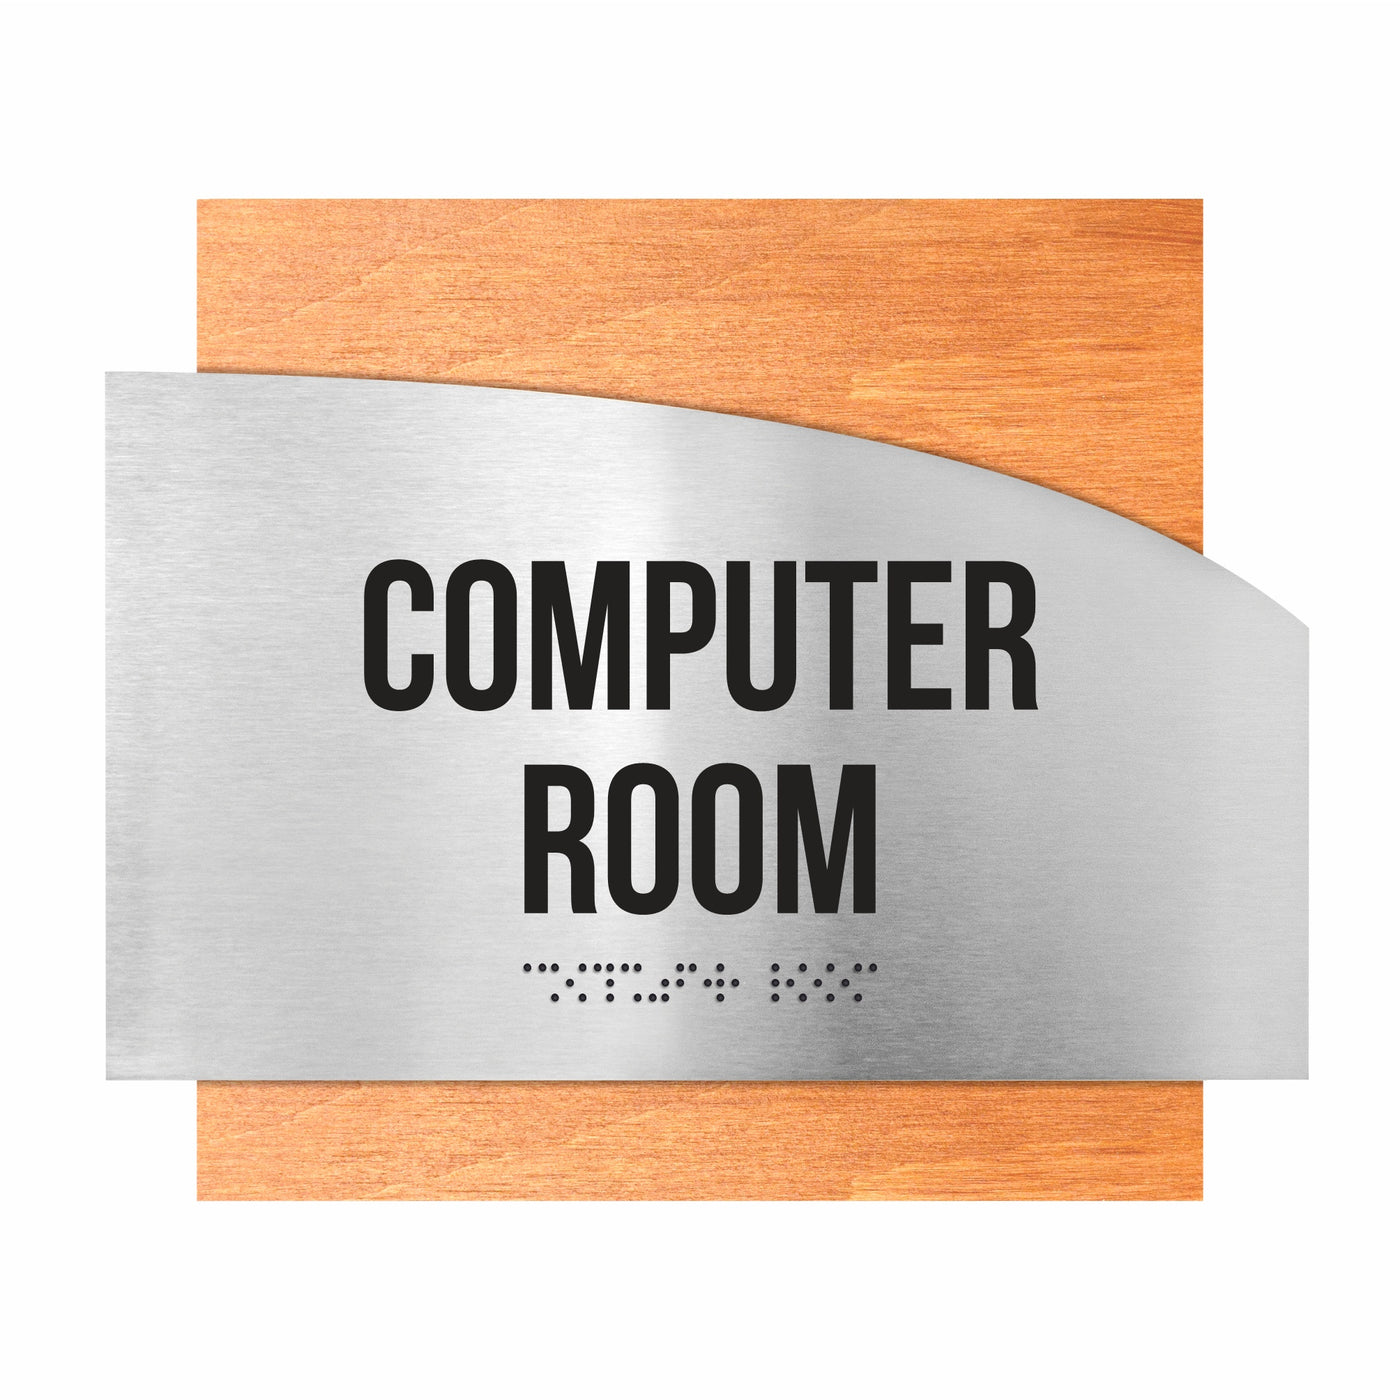 Computer Room Custom Door Signs - Stainless Steel & Wood - "Wave" Design